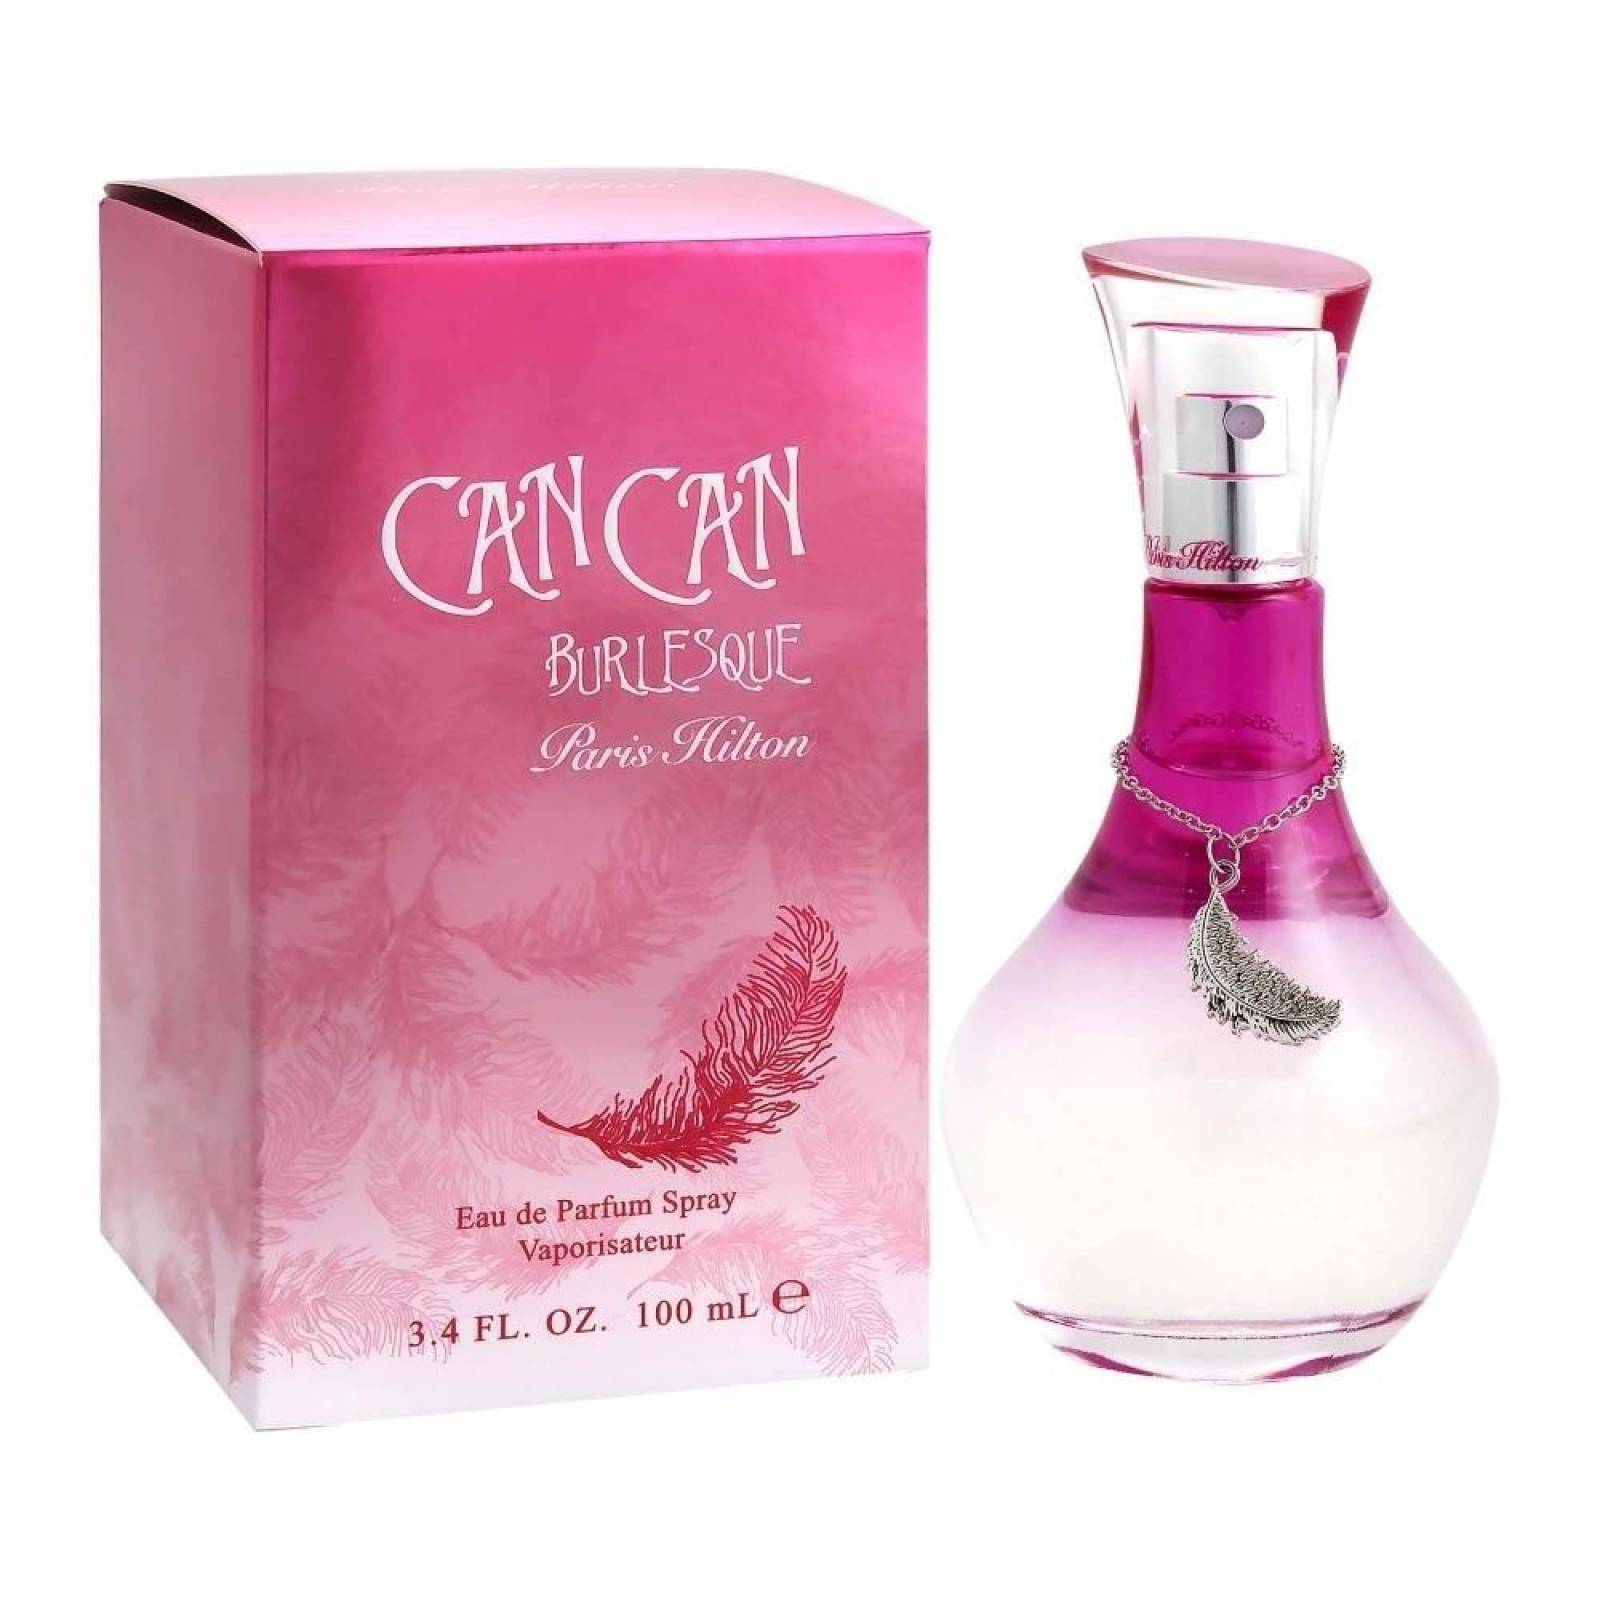 Can Can Burlesque De Paris Hilton Eau De Parfum 100 ml